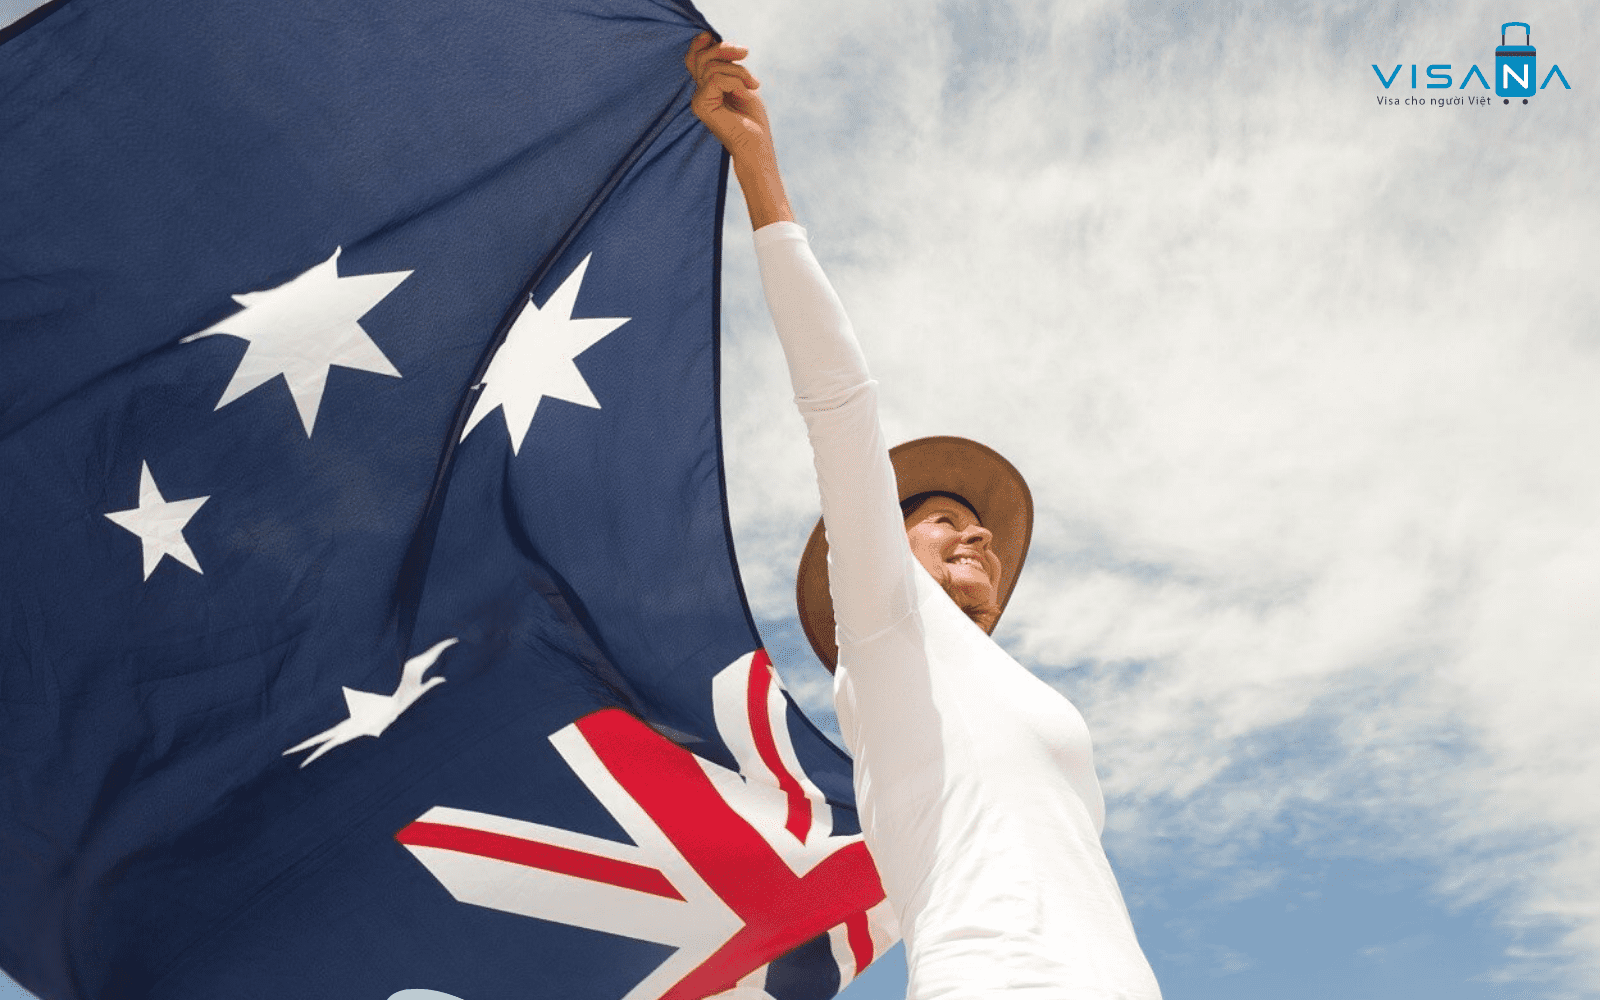 Hướng dẫn chi tiết cách xin visa Úc online mới nhất